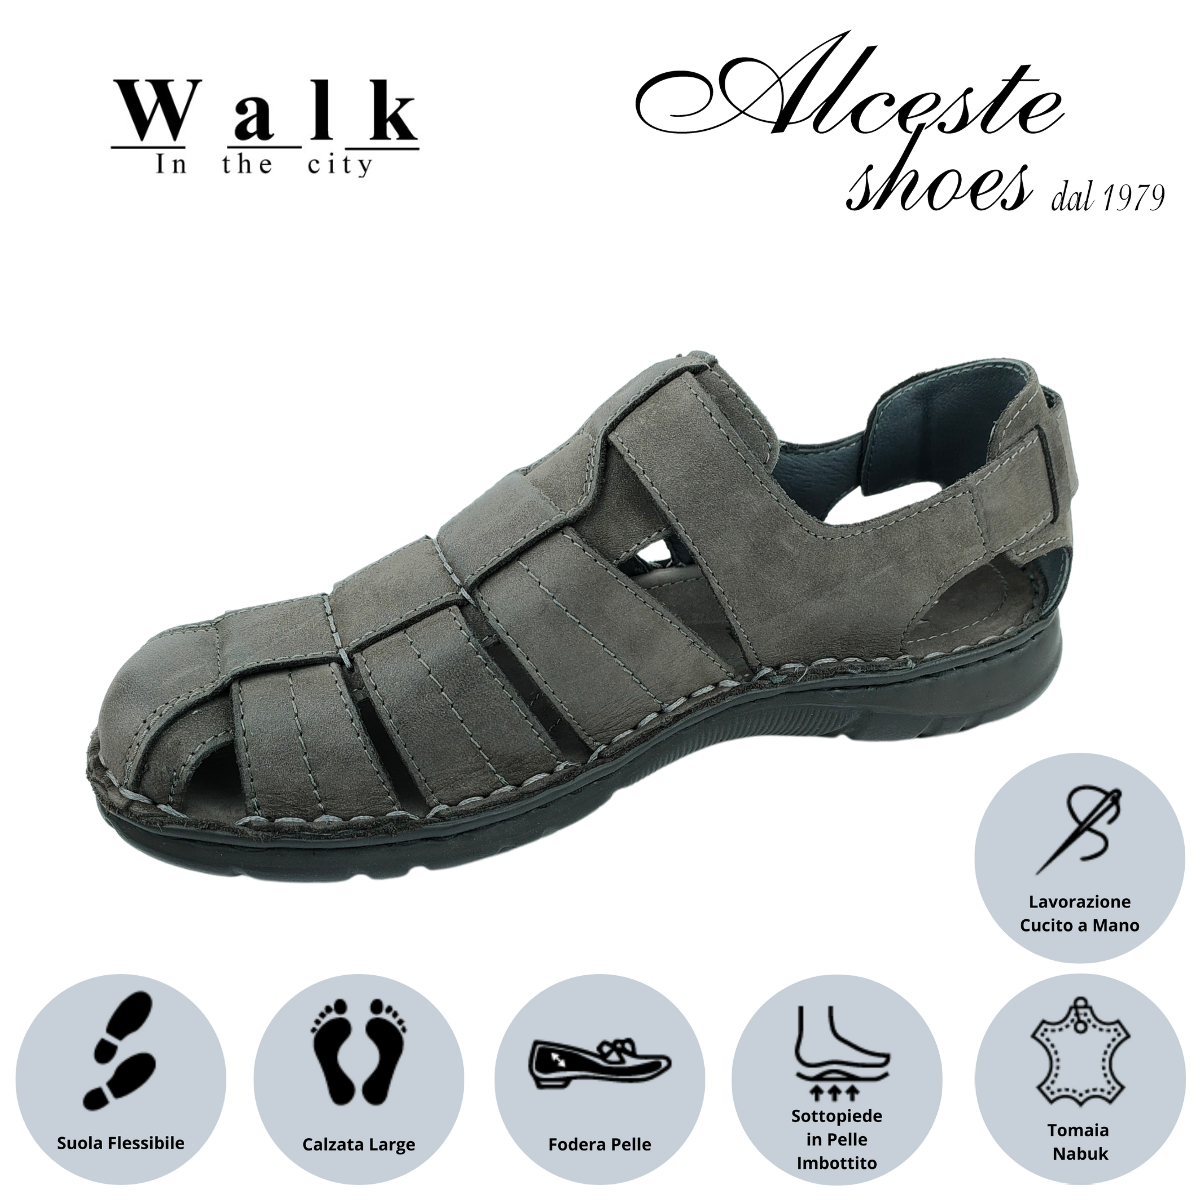 Sandalo Uomo Chiusura con Velcro "Walk in The City" Art. 20910 Nabuk Nero Alceste Shoes 25